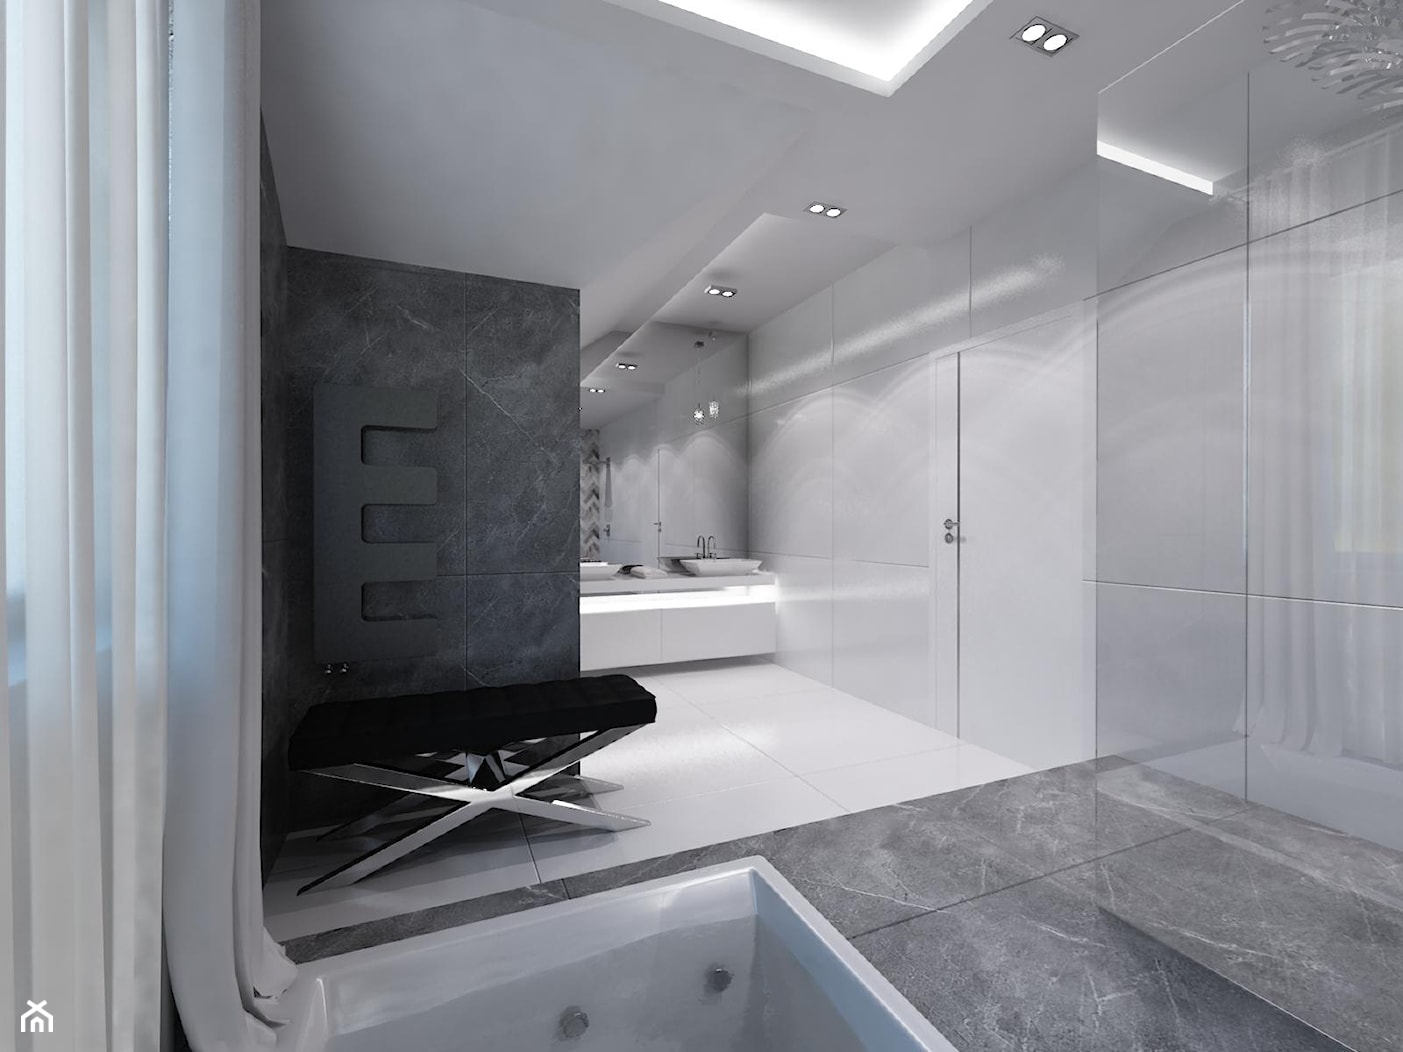 Domowe SPA - Duża łazienka w bloku w domu jednorodzinnym z oknem - zdjęcie od Art&Design Kinga Śliwa - Homebook